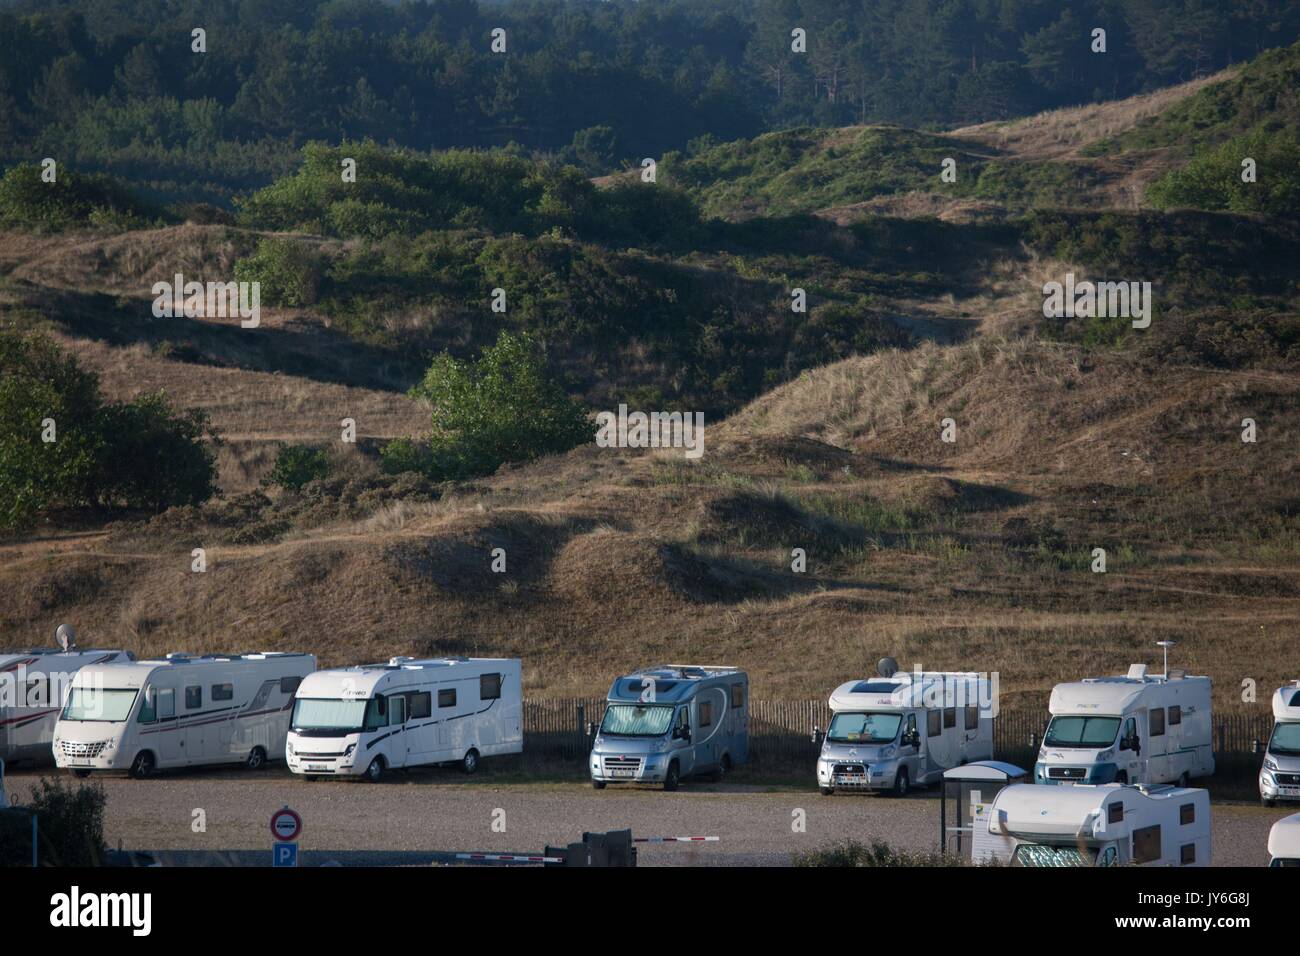 France, Région des Hauts de France, Picardie, Baie de Somme, Fort Mahon,  aire de camping car, parking Photo Gilles Targat Stock Photo - Alamy